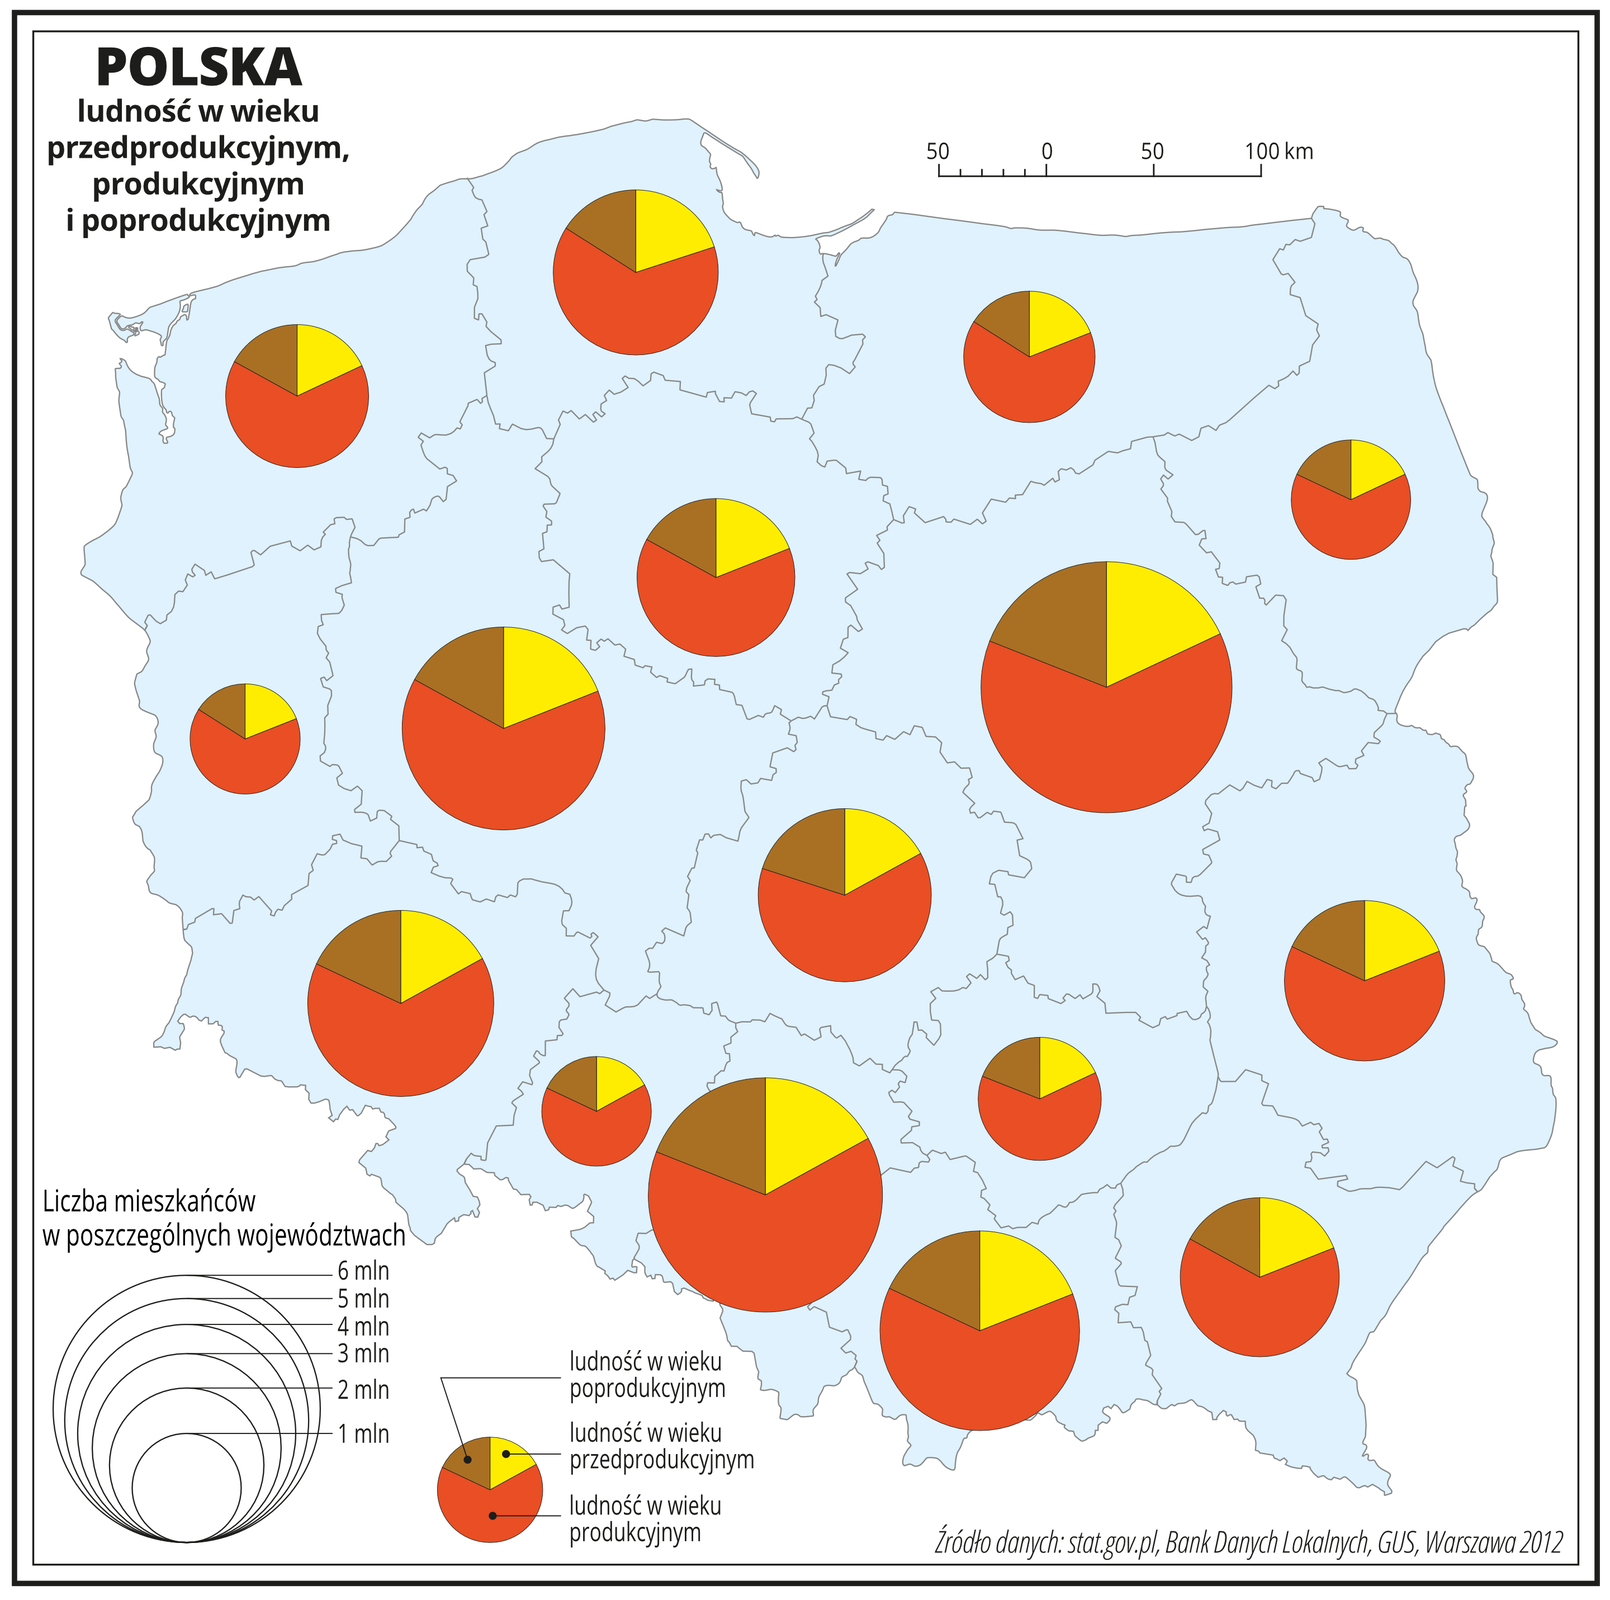 Ilustracja przedstawia mapę Polski z podziałem na województwa. Wszystkie województwa mają kolor jasnoniebieski. W obrębie każdego województwa umieszczony jest diagram kołowy. Na każdym diagramie umieszczono dane dotyczące procentowego udziału ludności w wieku produkcyjnym – kolor czerwony, poprodukcyjnym – kolor brązowy i przedprodukcyjnym – kolor żółty w ogólnej liczbie ludności Polski. Diagramy mają zbliżony rozkład procentowy, kolor żółty zajmuje około jedną szóstą koła – czyli około siedemnaście procent, kolor czerwony cztery szóste koła – około sześćdziesiąt sześć procent i kolor brązowy jedną szóstą koła – około siedemnaście procent. Diagramy kołowe są różnej wielkości. Wielkość diagramów – kół, odpowiada liczbie ludności danego województwa. Największy diagram jest w województwie mazowieckim, ludność liczy tam sześć milionów, a najmniejszy w województwie opolskim – jeden milion. Na dole mapy po lewej stronie umieszczono legendę. Najmniejszy diagram kołowy obrazuje strukturę ludności w województwach z liczbą ludności jeden milion, kolejne dwa, trzy, cztery miliony, pięć milionów, a największy w województwach z liczbą ludności sześć milionów. W legendzie opisano kolory, których użyto na diagramach kołowych. Kolor czerwony – ludność w wieku produkcyjnym. Kolor brązowy – ludność w wieku poprodukcyjnym. Kolor żółty – ludność w wieku przedprodukcyjnym.